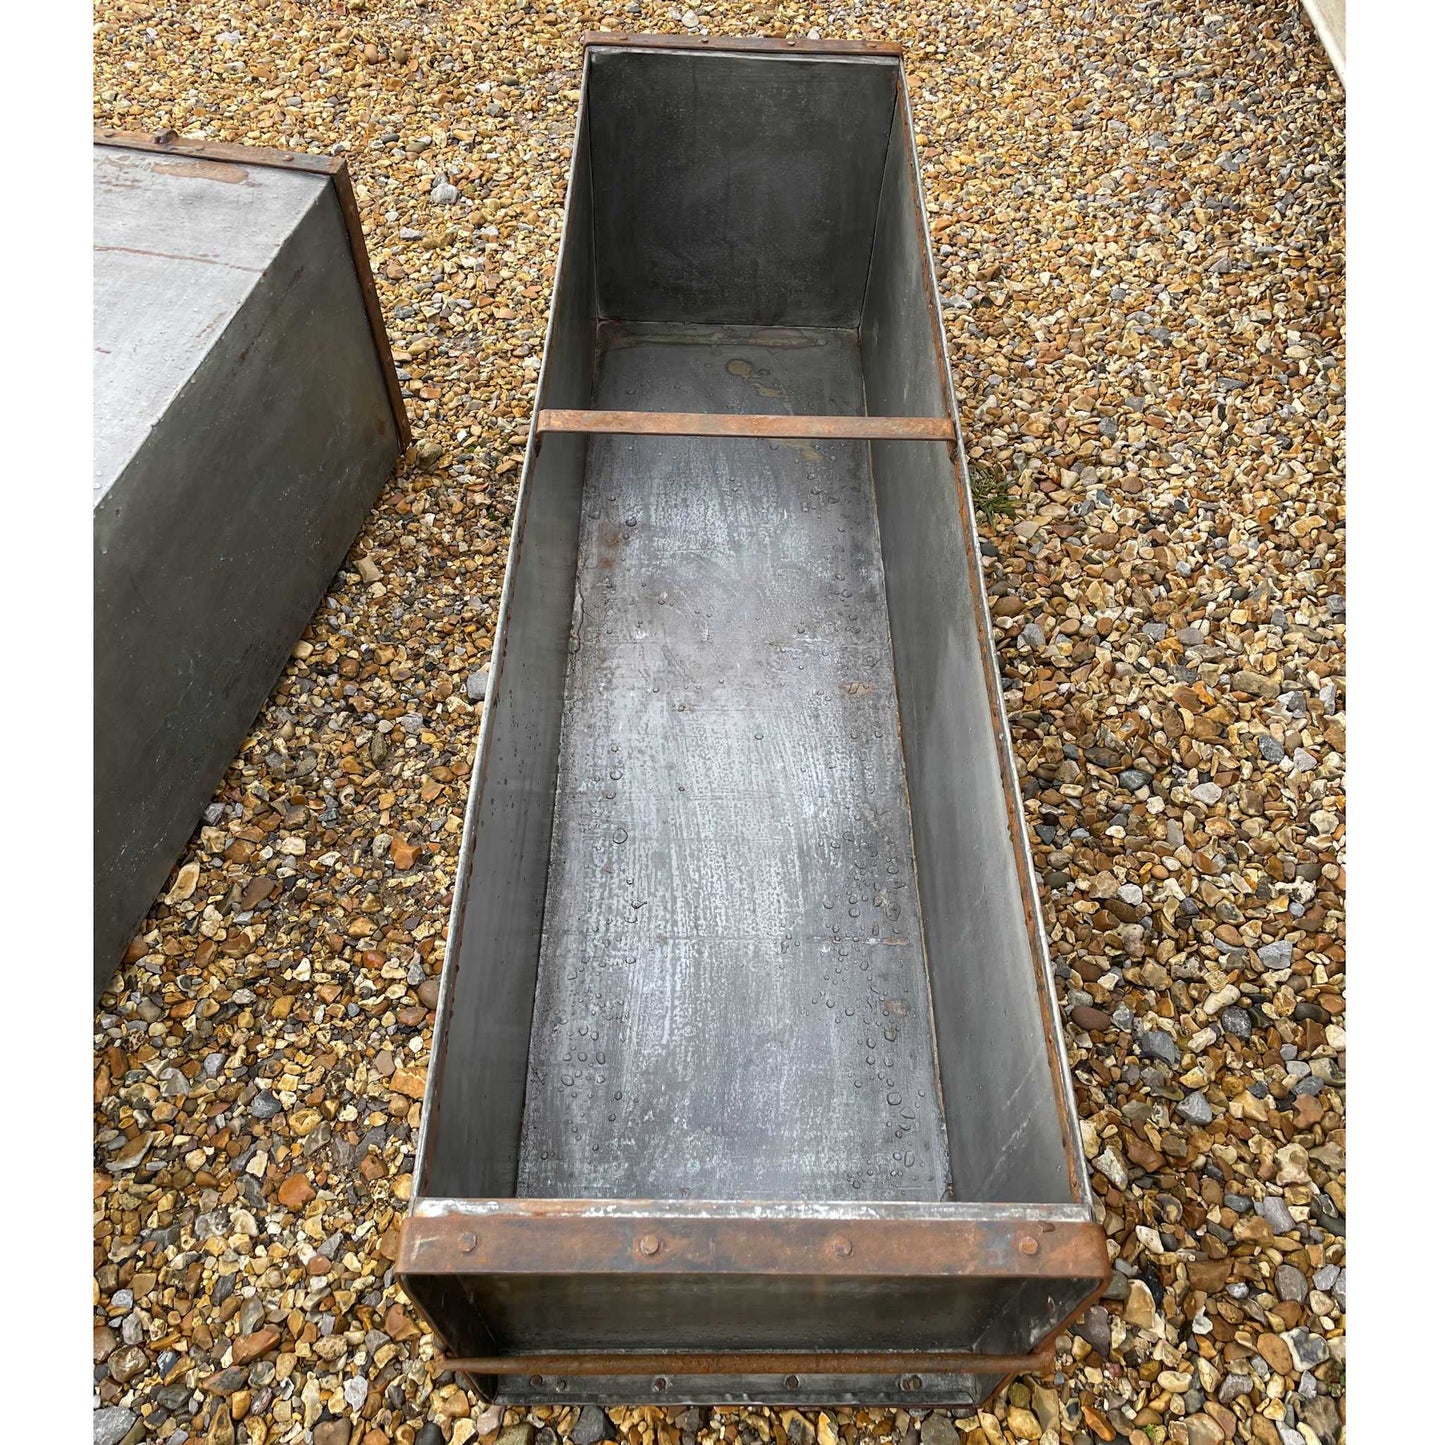 Large metal rectangular trough planter.